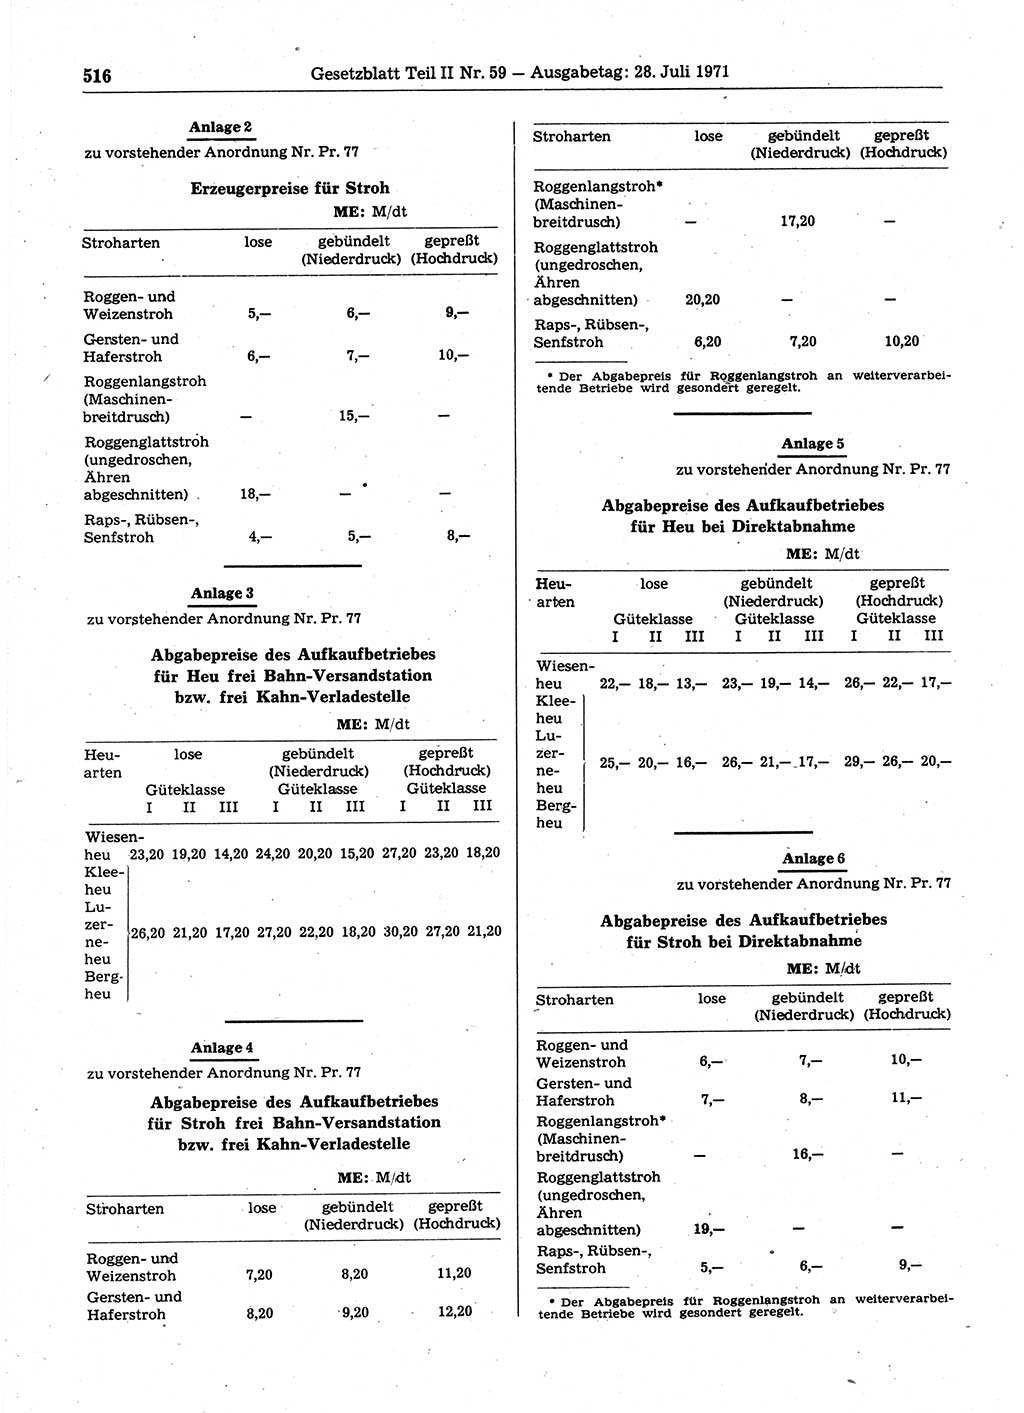 Gesetzblatt (GBl.) der Deutschen Demokratischen Republik (DDR) Teil ⅠⅠ 1971, Seite 516 (GBl. DDR ⅠⅠ 1971, S. 516)